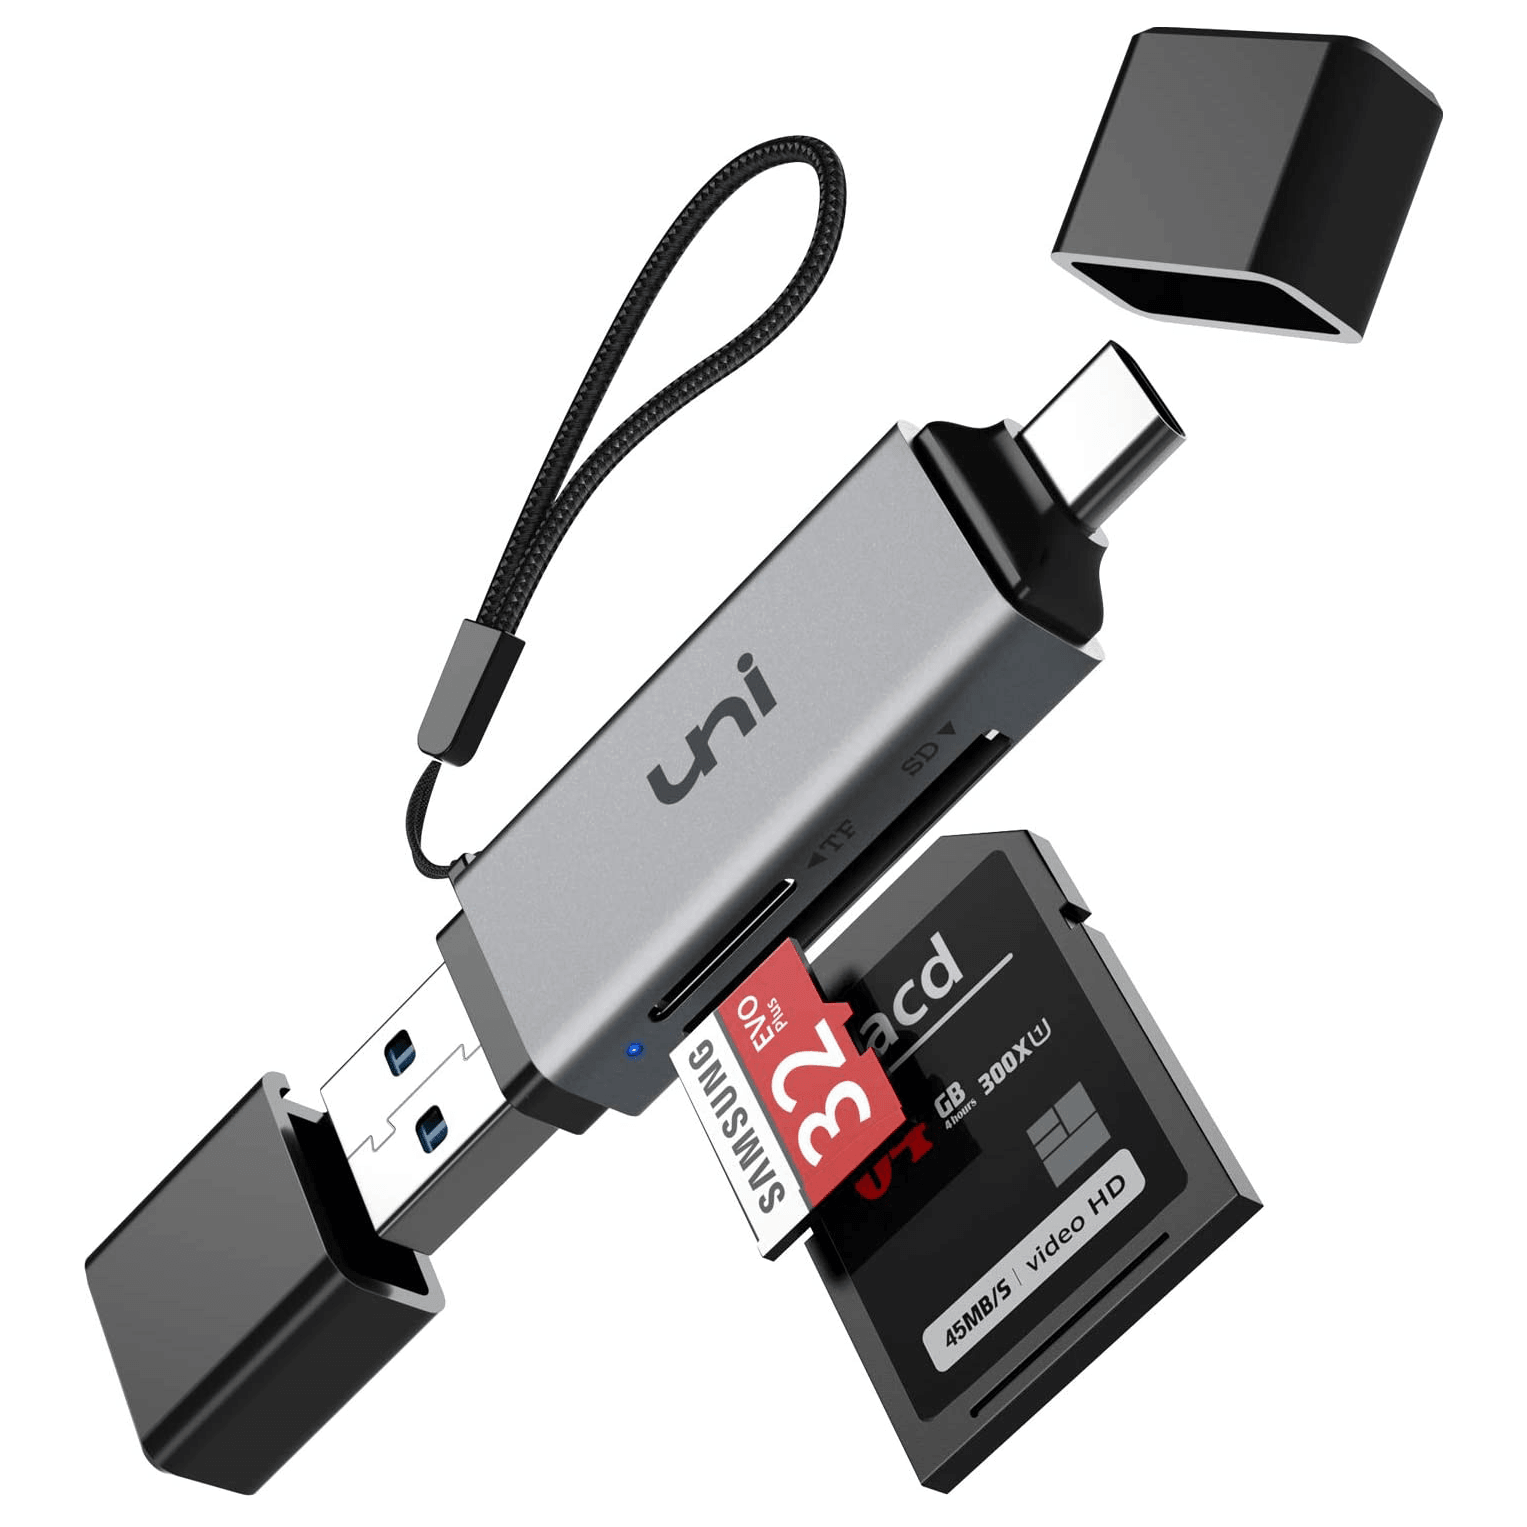 USB-C Card Reader